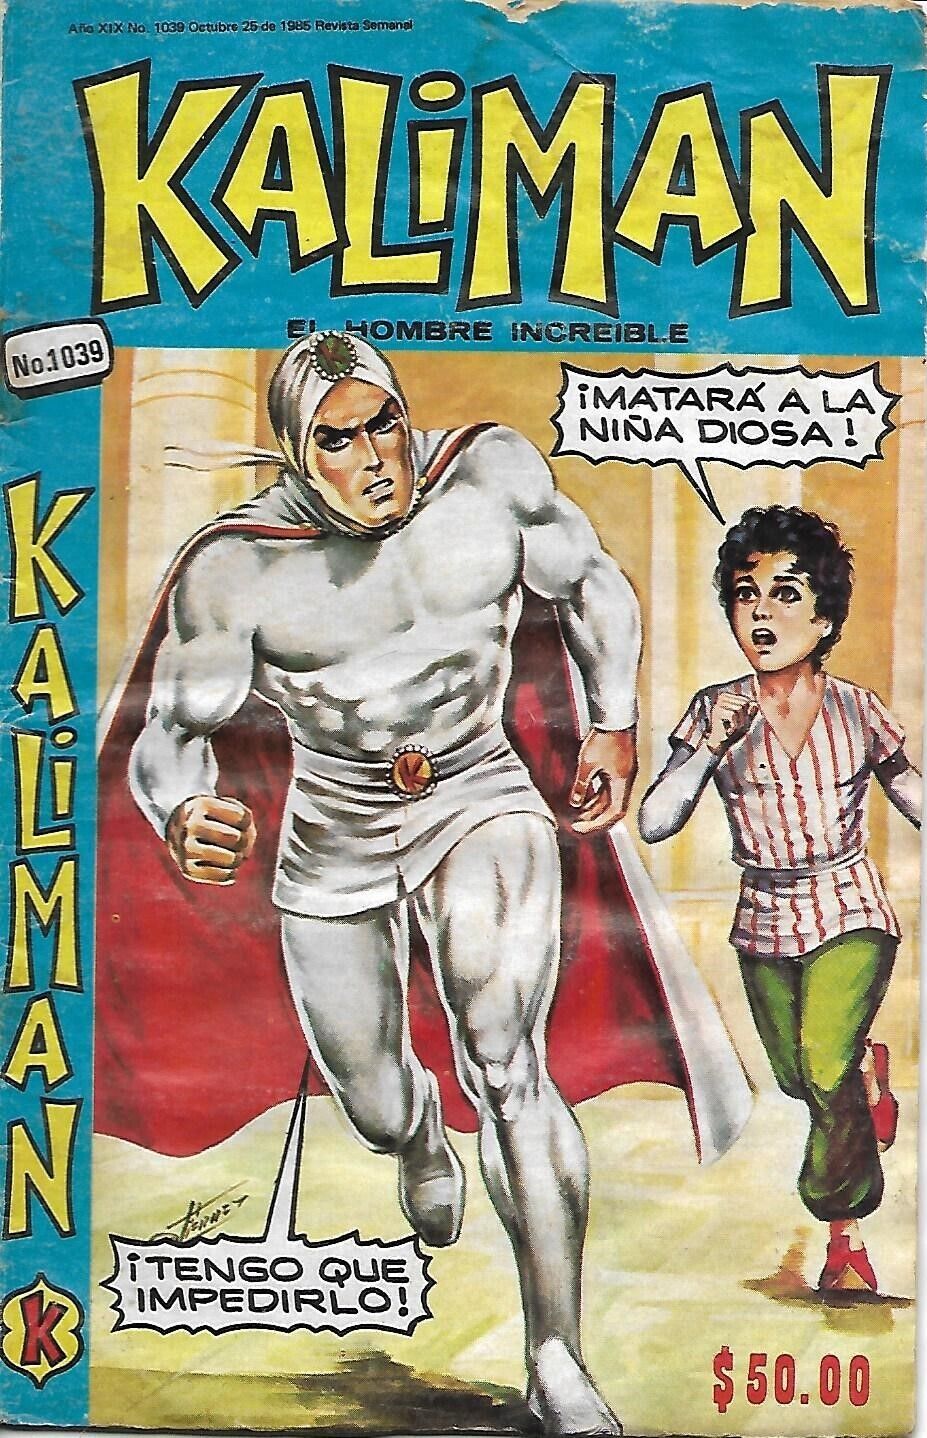 Kaliman El Hombre Increible #1039 - Octubre 25, 1985